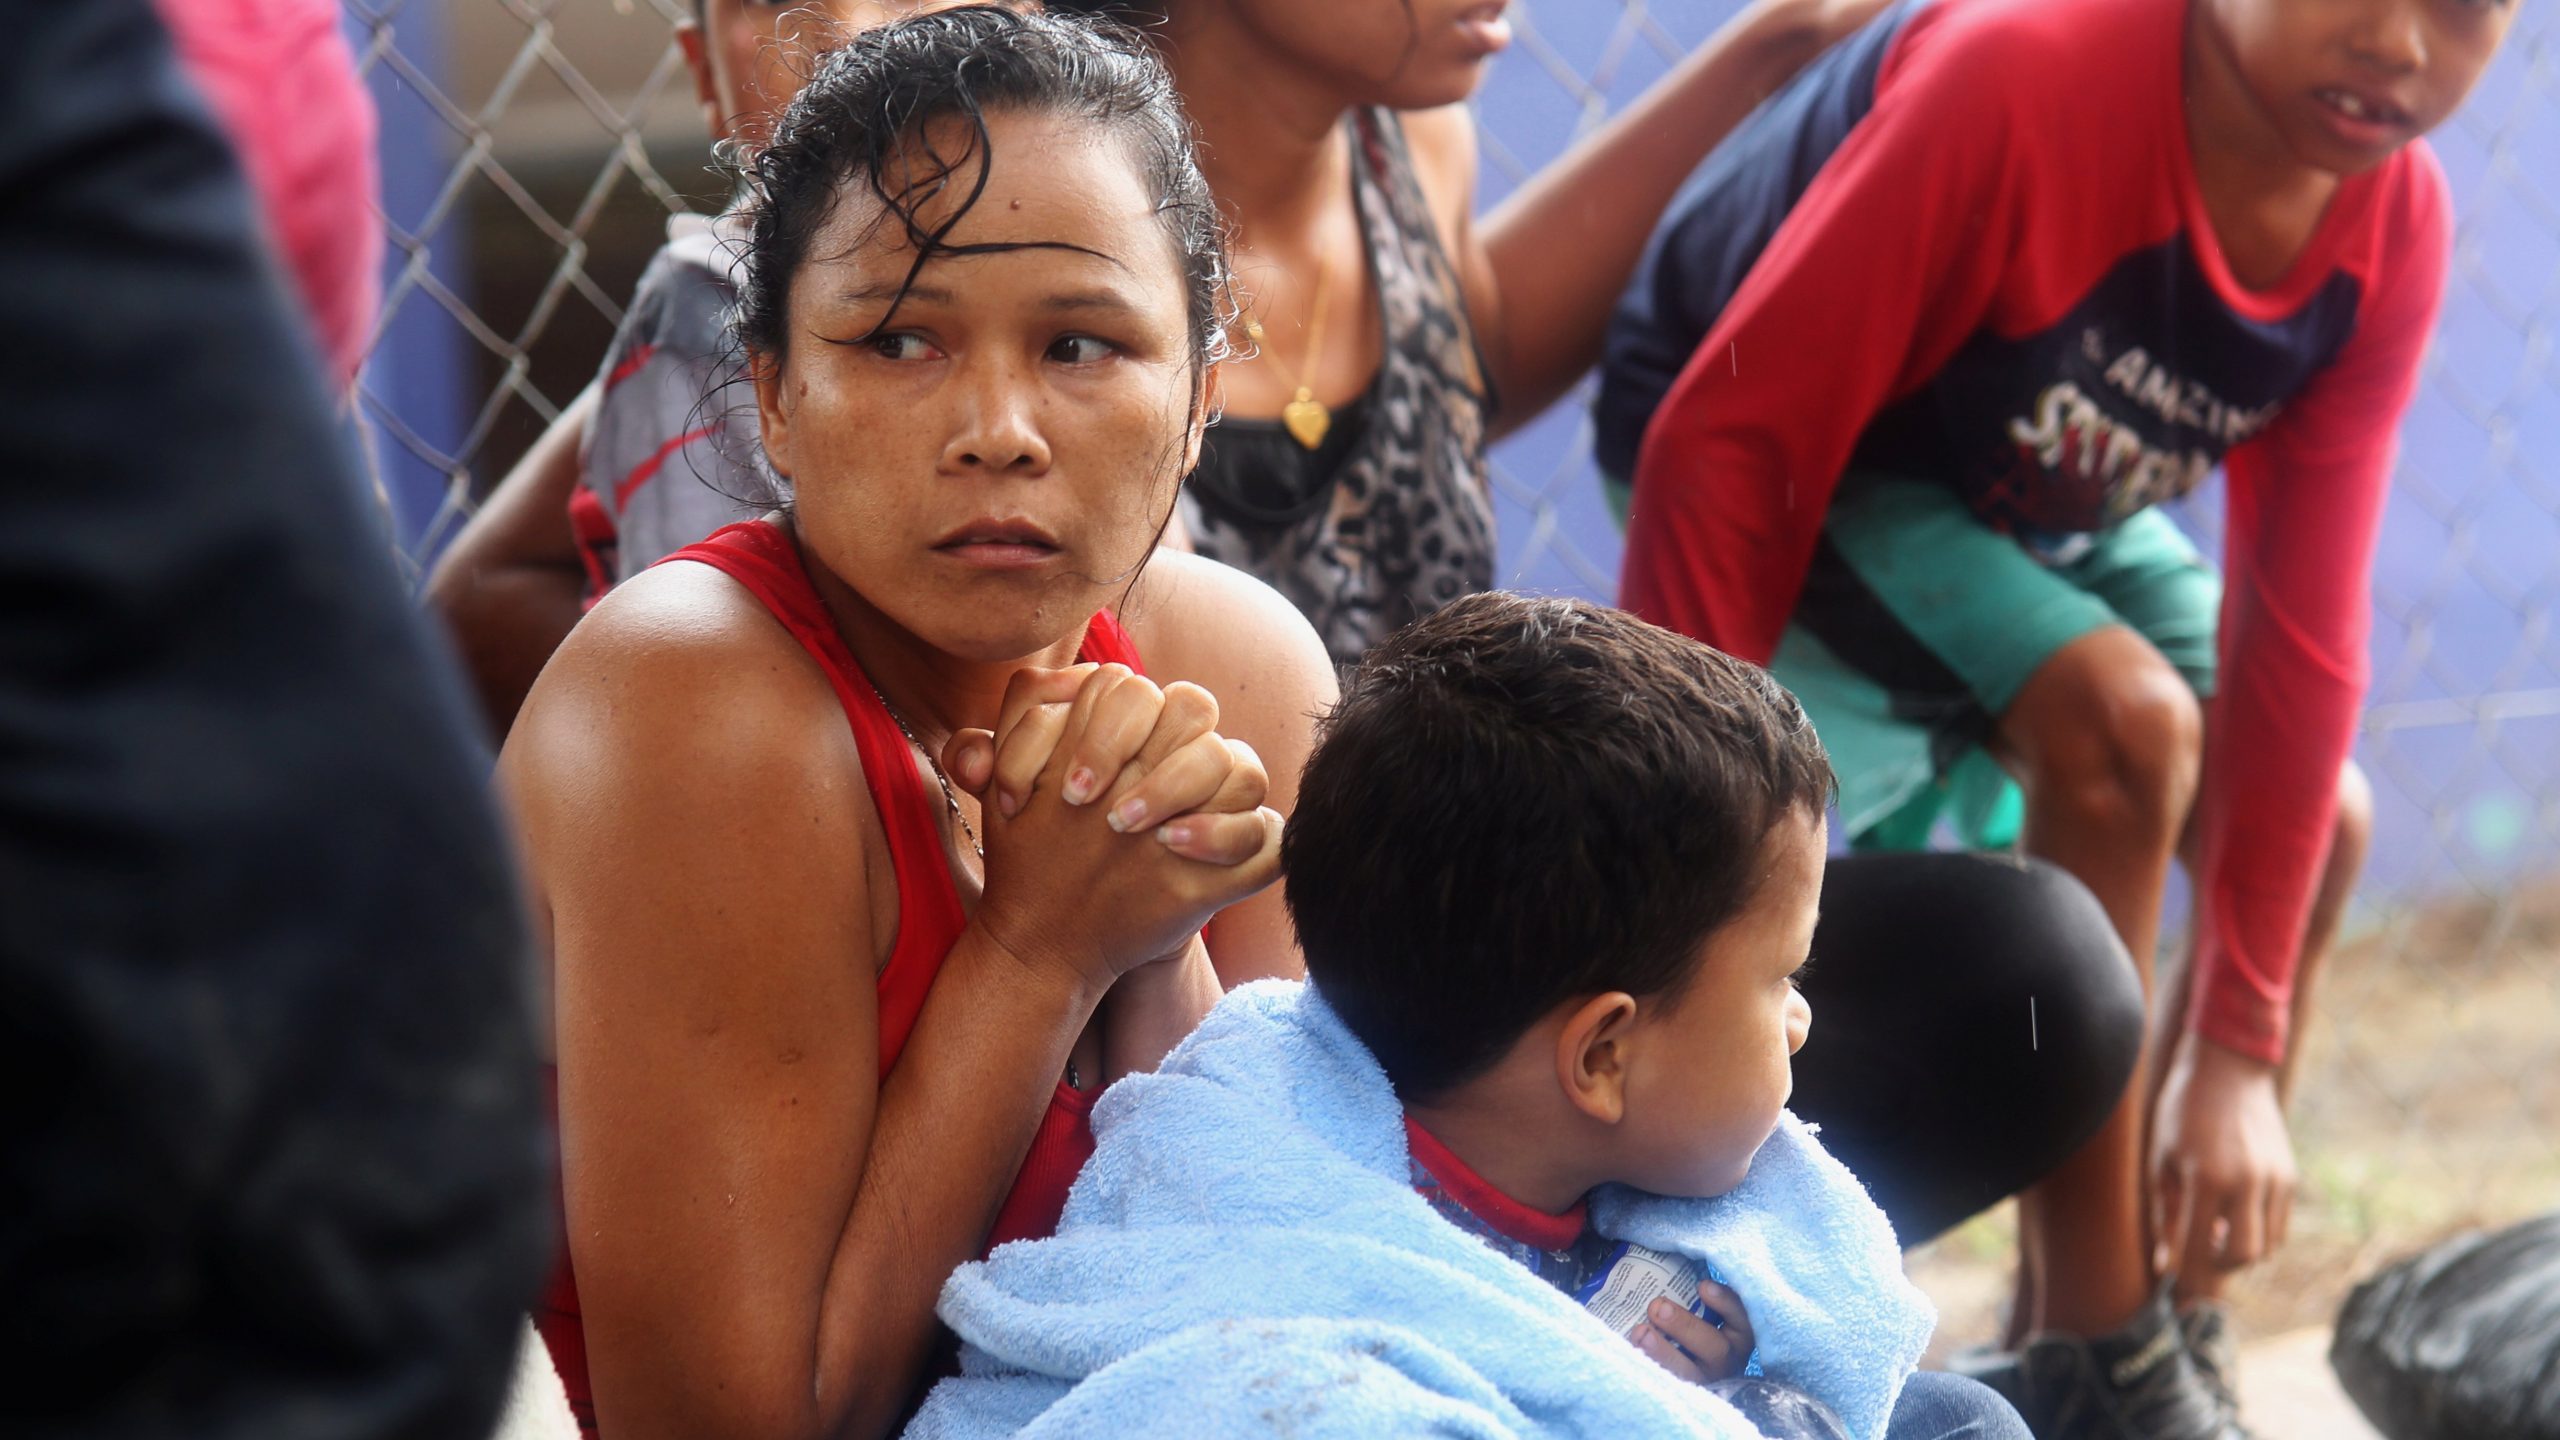 After shipwreck, denounce treatment of Venezuelan refugees